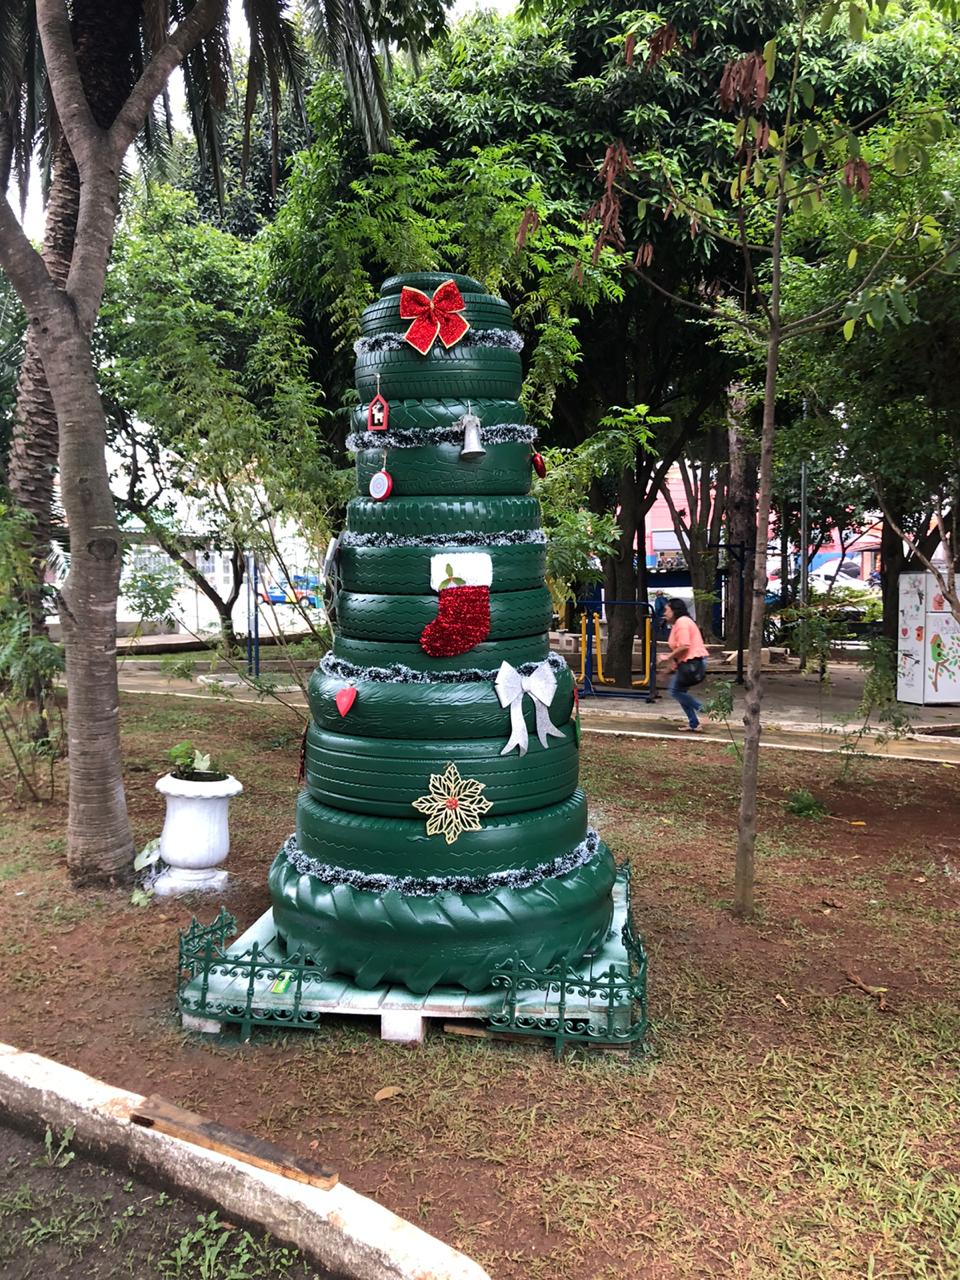 Visualiza-se a imagem de pneus verdes, postos um em cima do outro, simbolizando uma árvore de natal. Há enfeites natalinos colocados na decoração, que está localizada em uma praça.